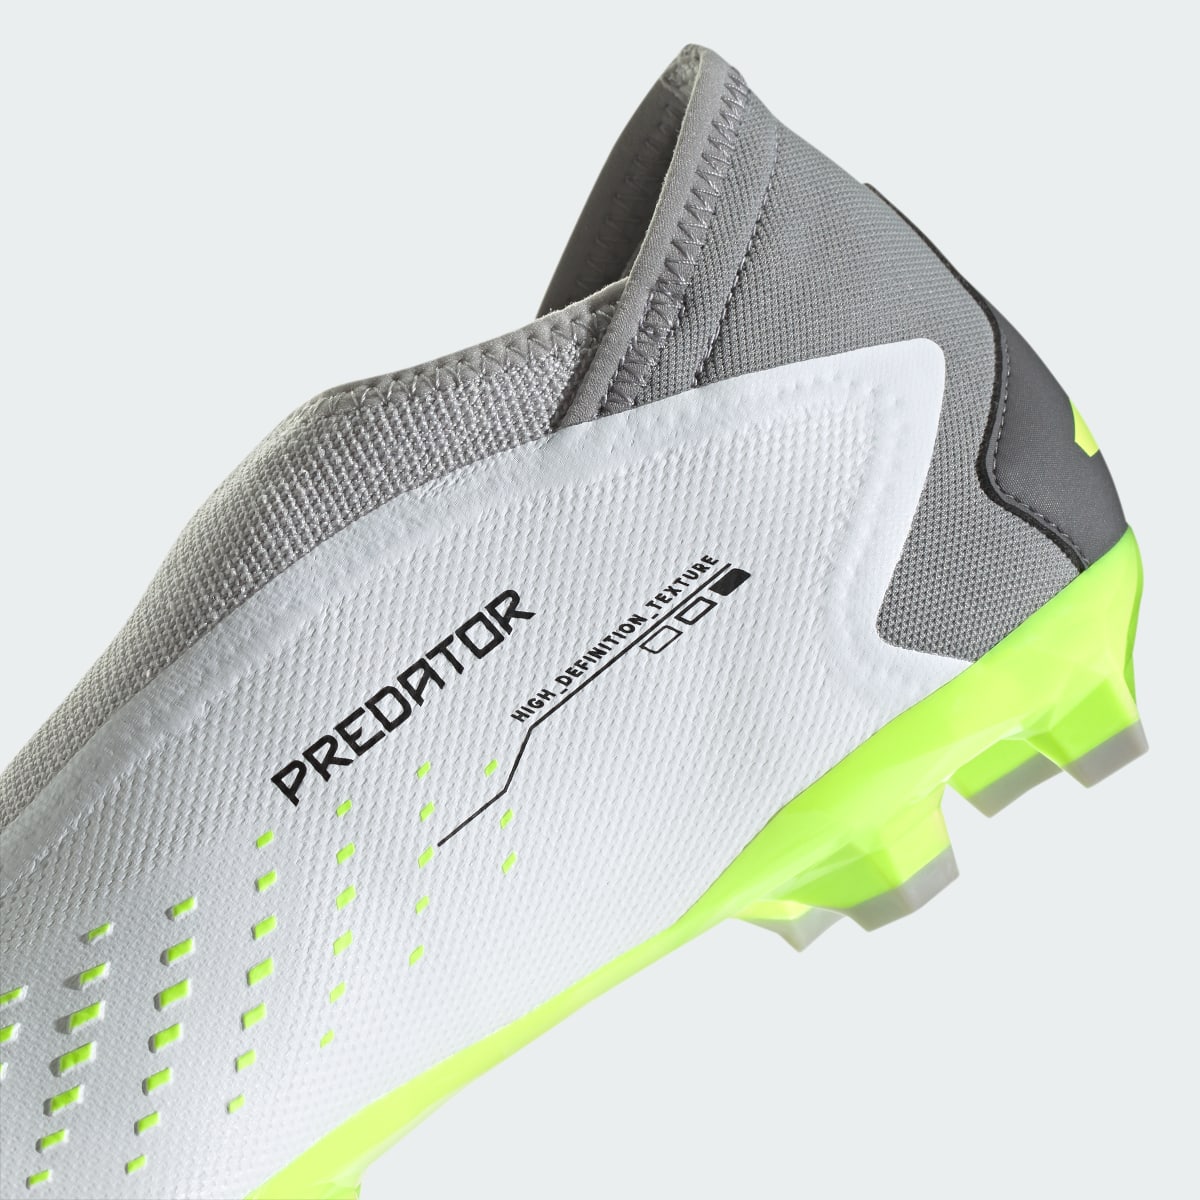 Adidas Scarpe da calcio Predator Accuracy.3 Laceless Firm Ground. 9